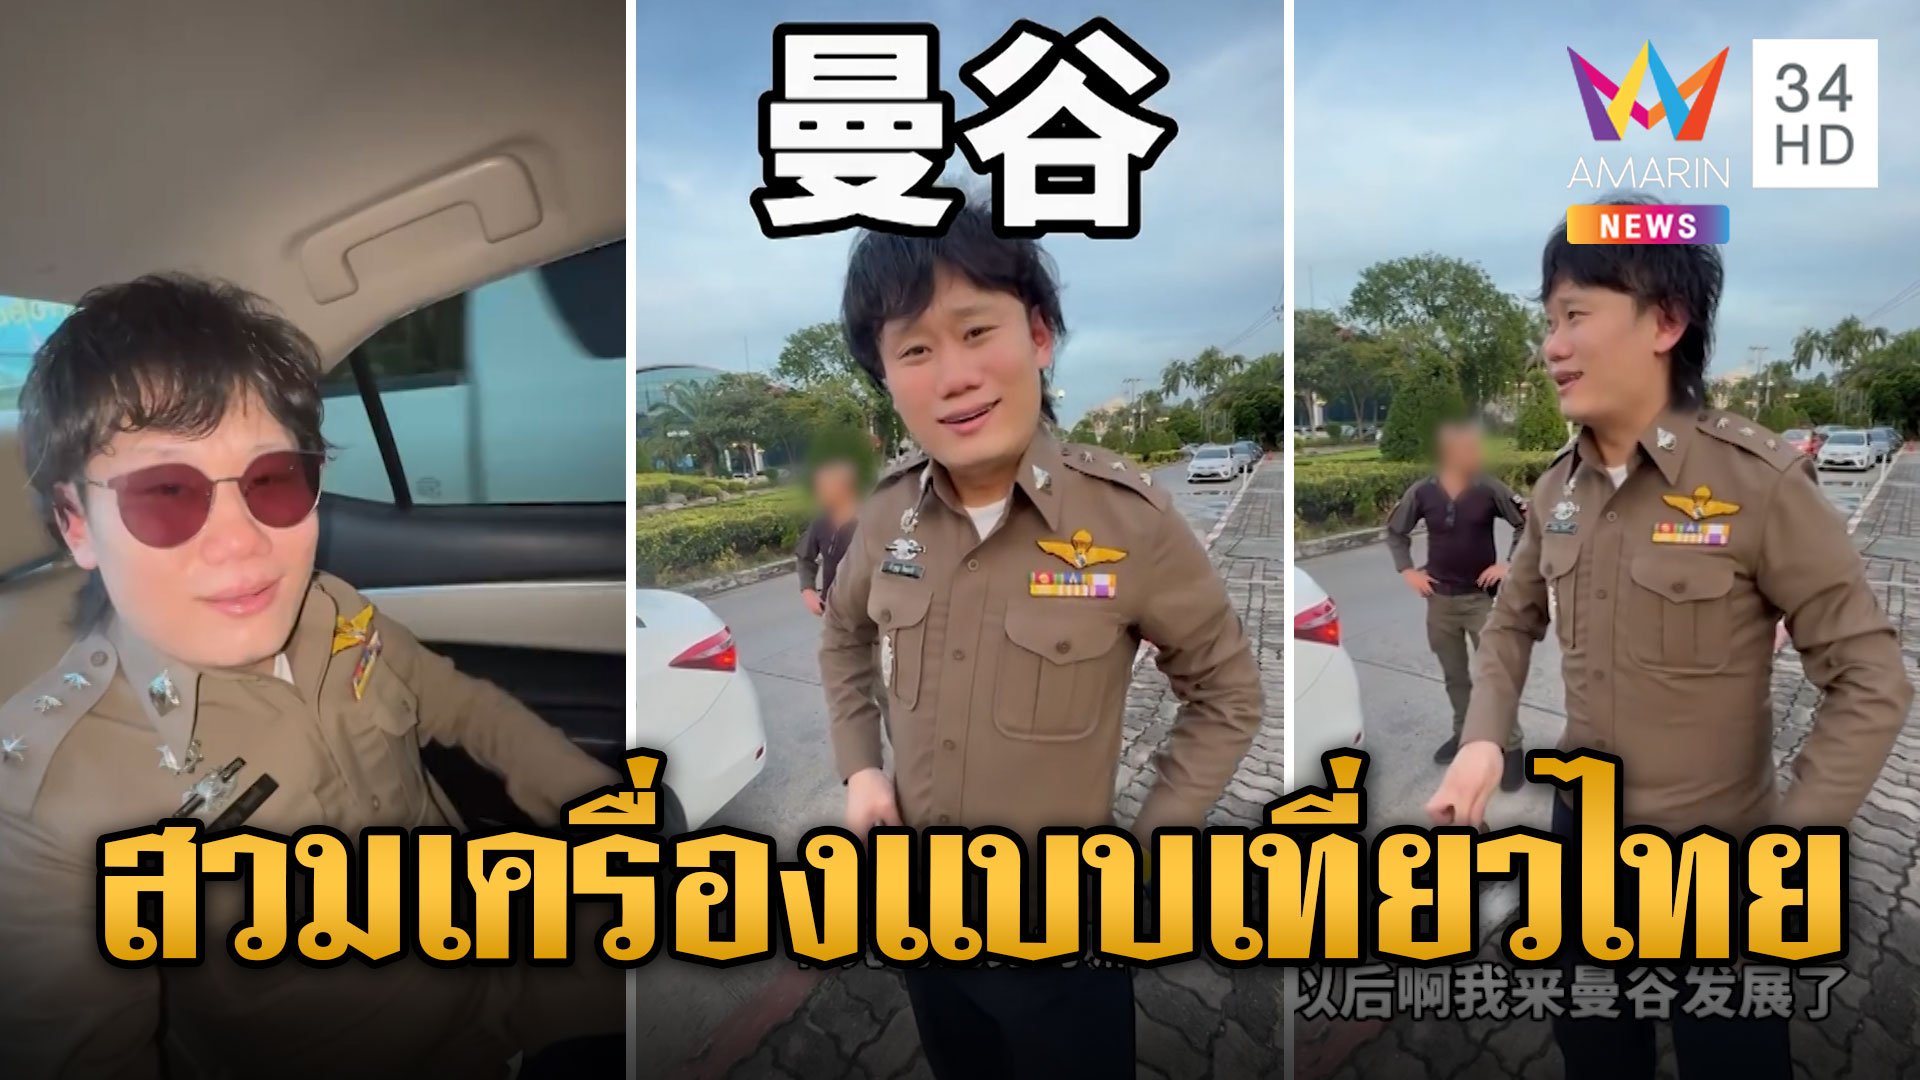 นทท.จีนเที่ยวไทย สวมเครื่องแบบ แถมมีชายแต่งกายคล้ายตร.เป็นพลขับ | ข่าวเที่ยงอมรินทร์ | 5 ธ.ค. 66 | AMARIN TVHD34